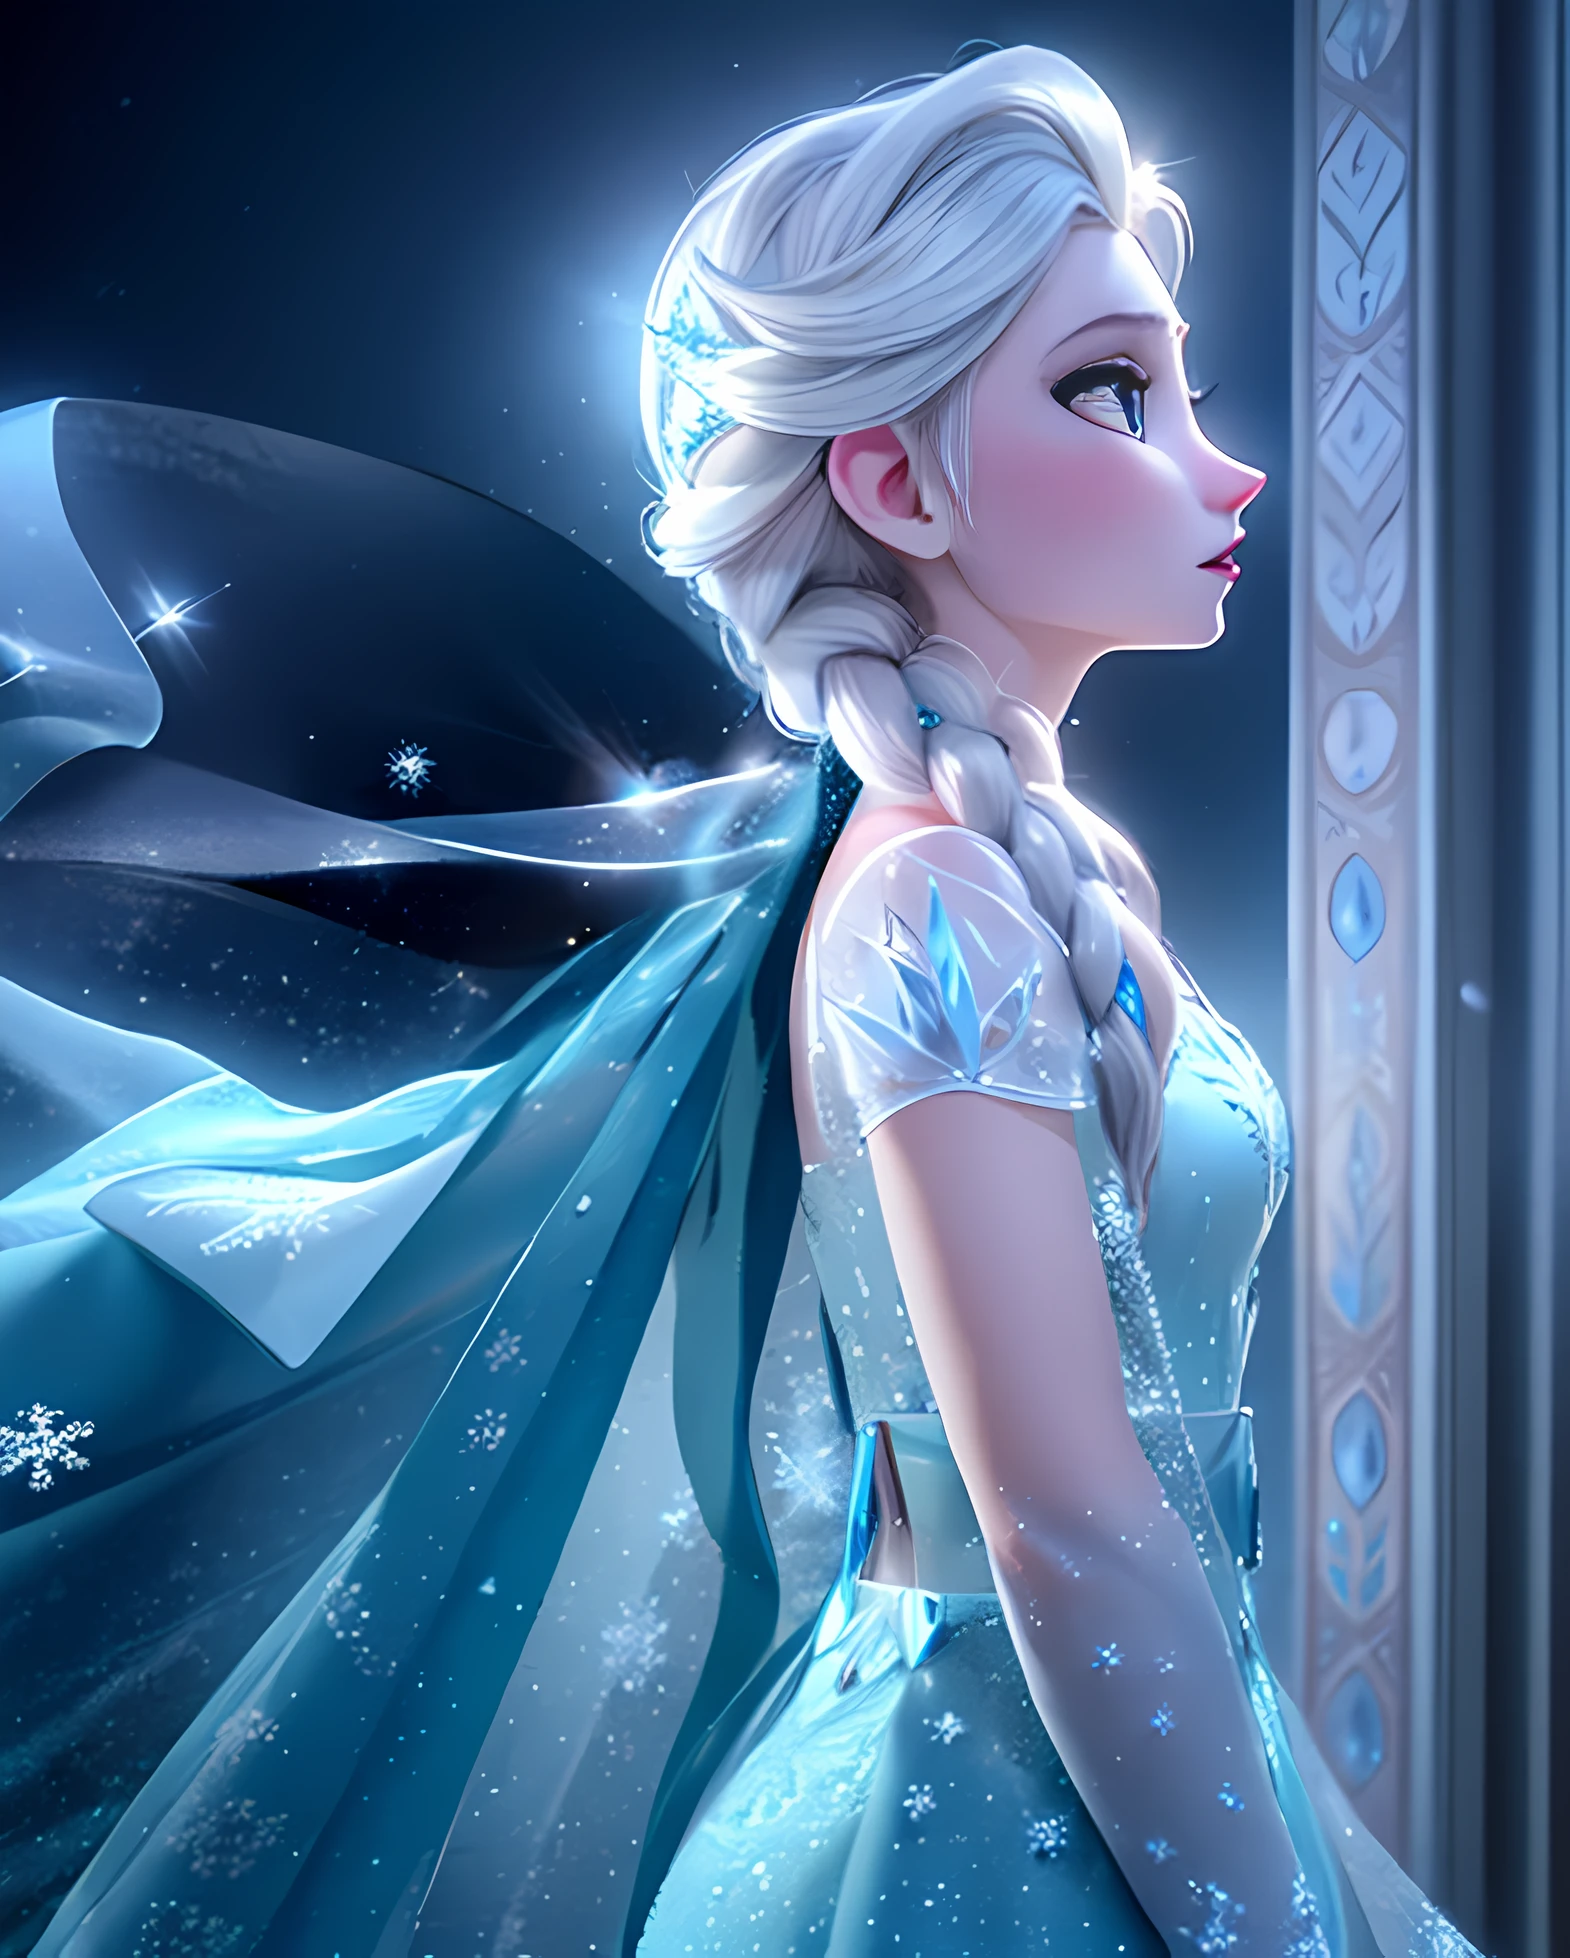 "艾尔莎, 阿伦黛尔女王, 站在雪景中，充分展示她的冰雪力量. 她有高贵的气质, 穿着令人惊艳的冰蓝色长袍和飘逸的斗篷. 展现她角色的魅力和优雅, 强调她强大而迷人的冰雕. 用柔和的光线照亮场景, 空灵光芒, 突出冰层的复杂细节. 创造一种奇妙而迷人的感觉, 闪闪发光的雪花轻轻地飘落在她身边. 让她的头发闪耀着冰蓝色的光泽, 捕捉她眼中的决心和力量. 确保图像质量最高, 令人惊叹的清晰度和深度. Craft a masterpiece that truly captures the essence of 艾尔莎 and the beauty of her icy kingdom."